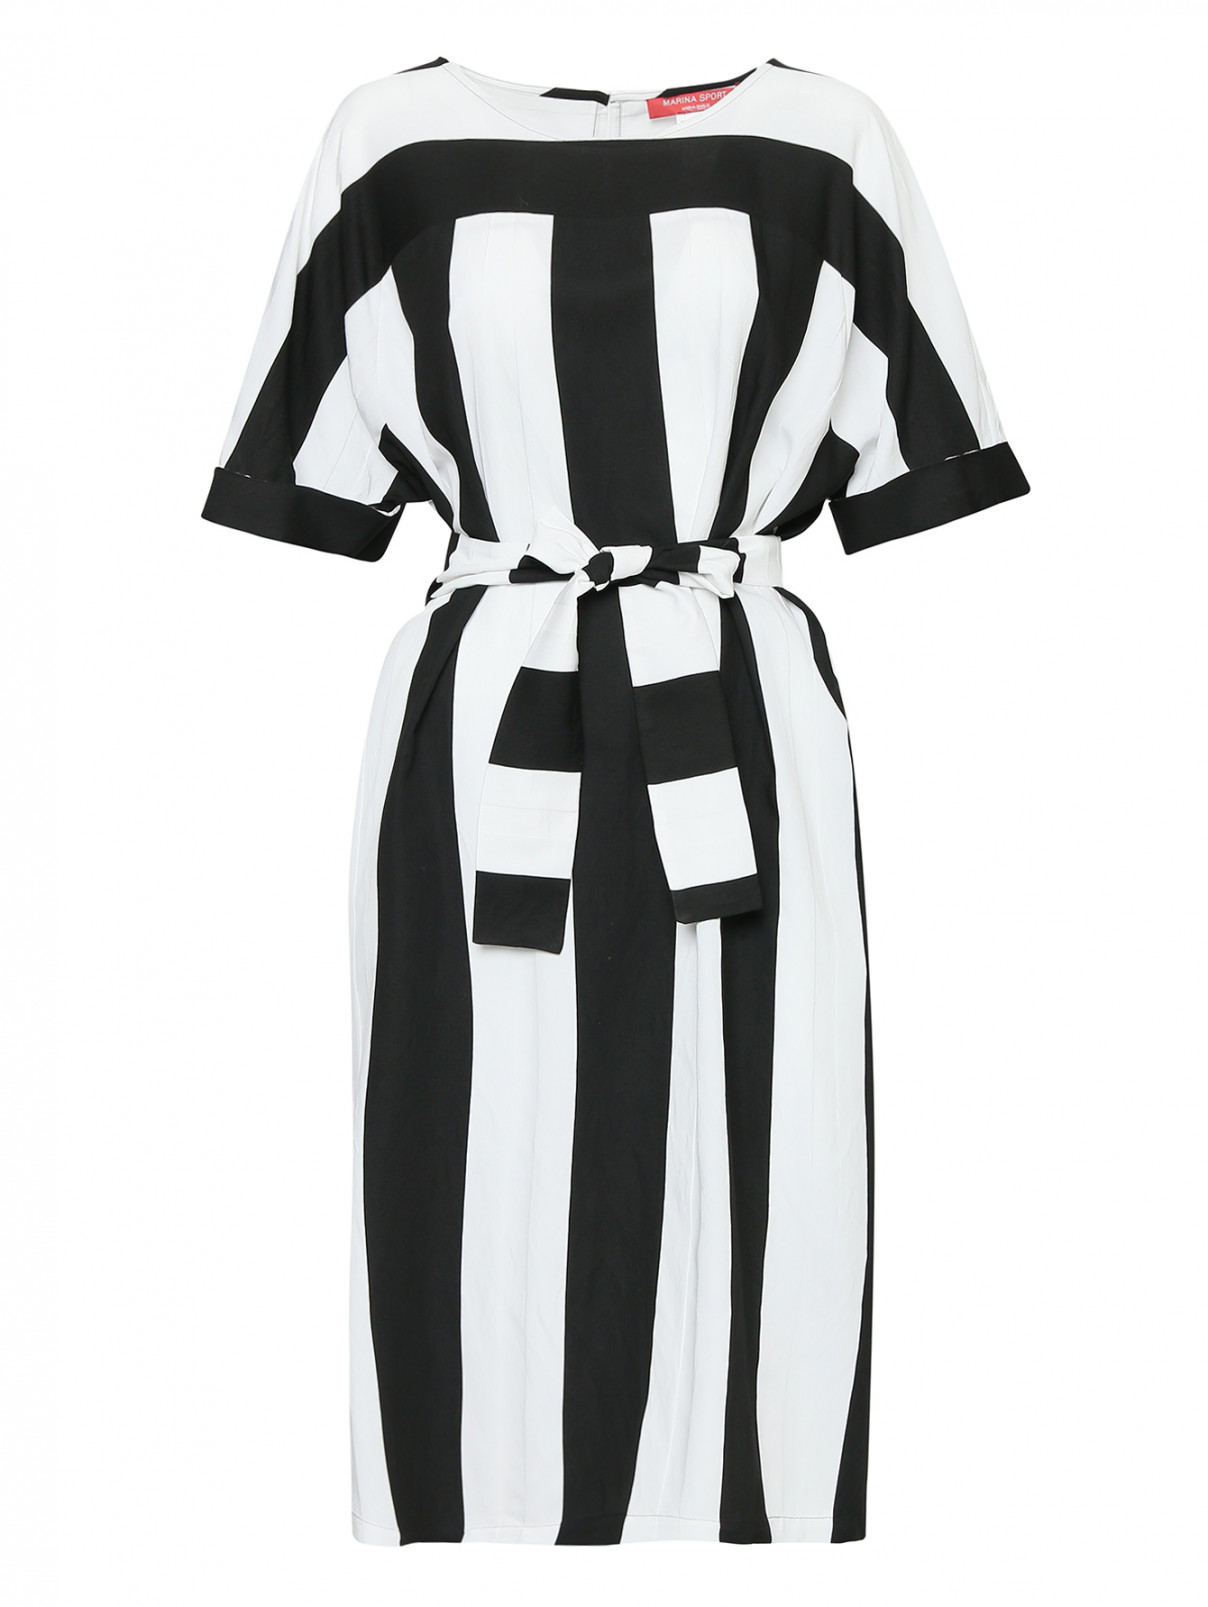 Платье из вискозы, с узором полоска Marina Rinaldi  –  Общий вид  – Цвет:  Черный